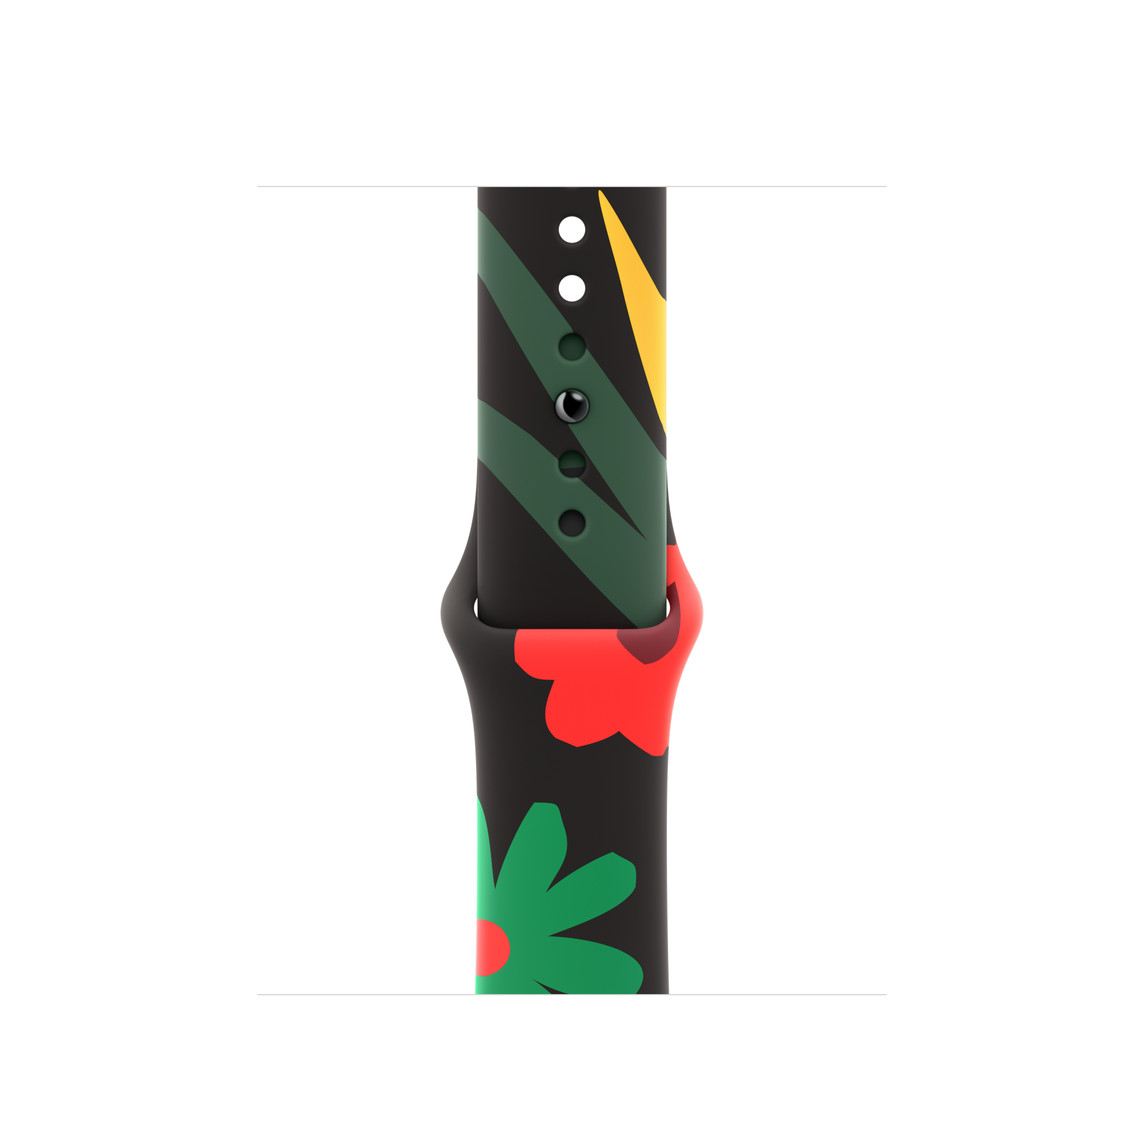 Black Unity Sportarmband in Unity Bloom, akzentuiert mit illustrierten Blumen in verschiedenen Formen und Größen, gezeichnet in einem einfachen Stil in den Farben Rot, Grün und Gelb, Pin‑Verschluss.